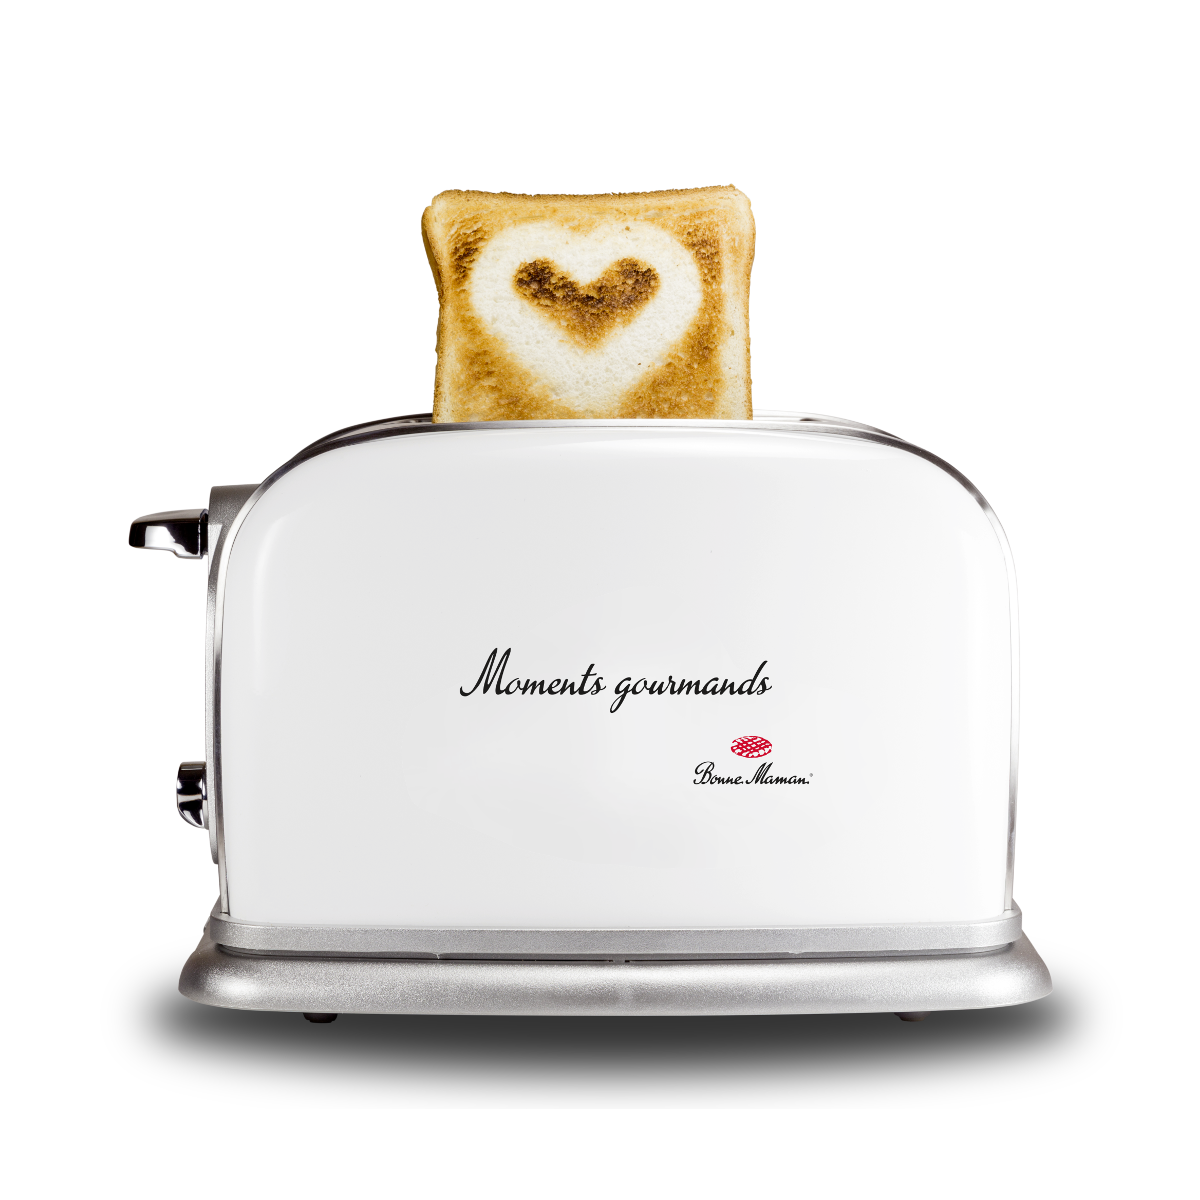 Le Toaster à Coeur A deux emplacements